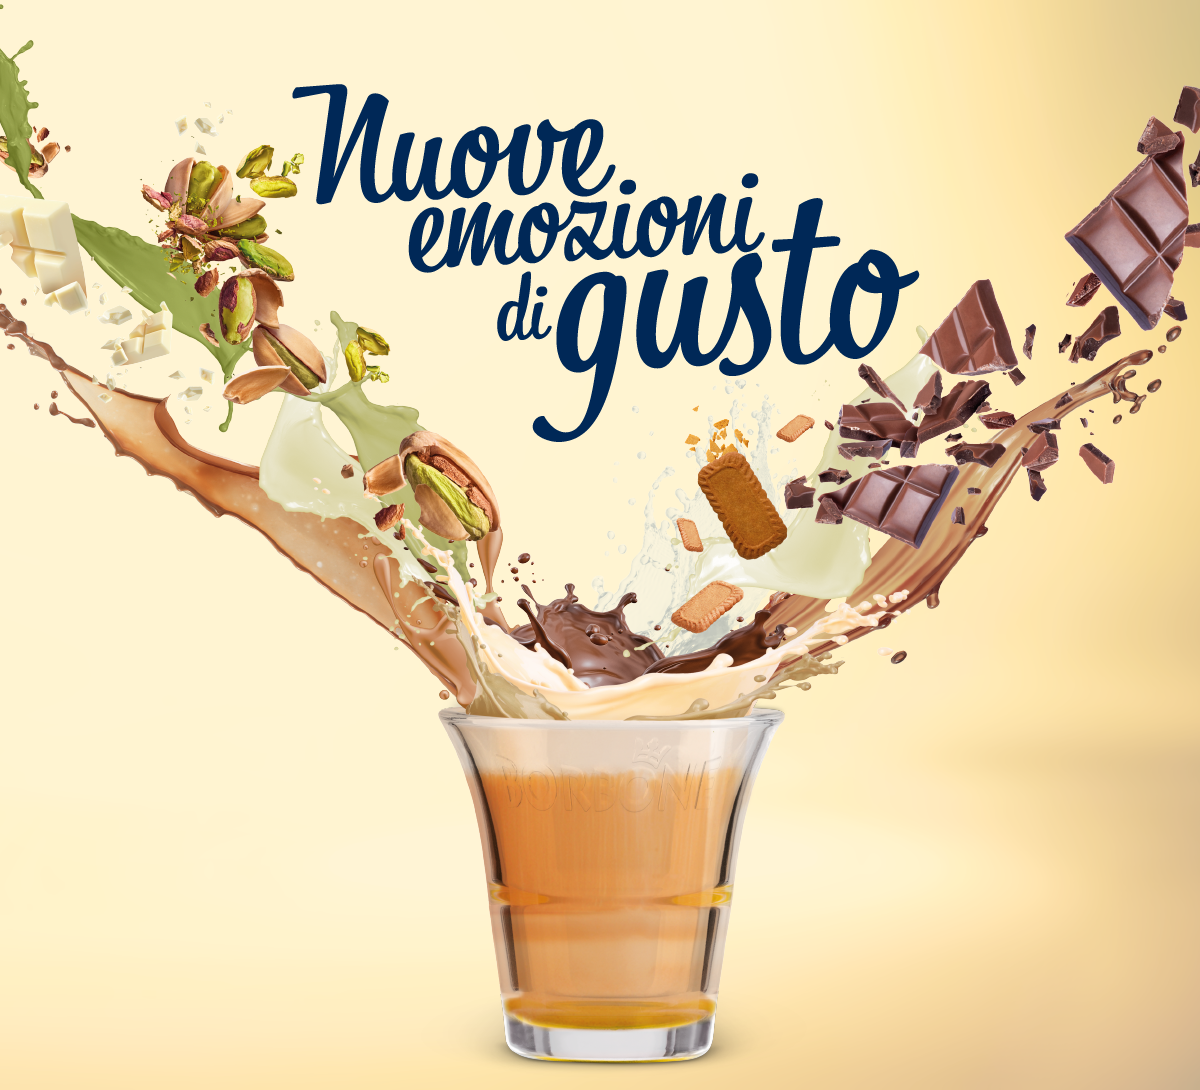 Caffe Borbone Frog Semi-automatica Macchina Per Espresso 1,5 L + 60 Cialde  -  - Offerte E Coupon: #BESLY!